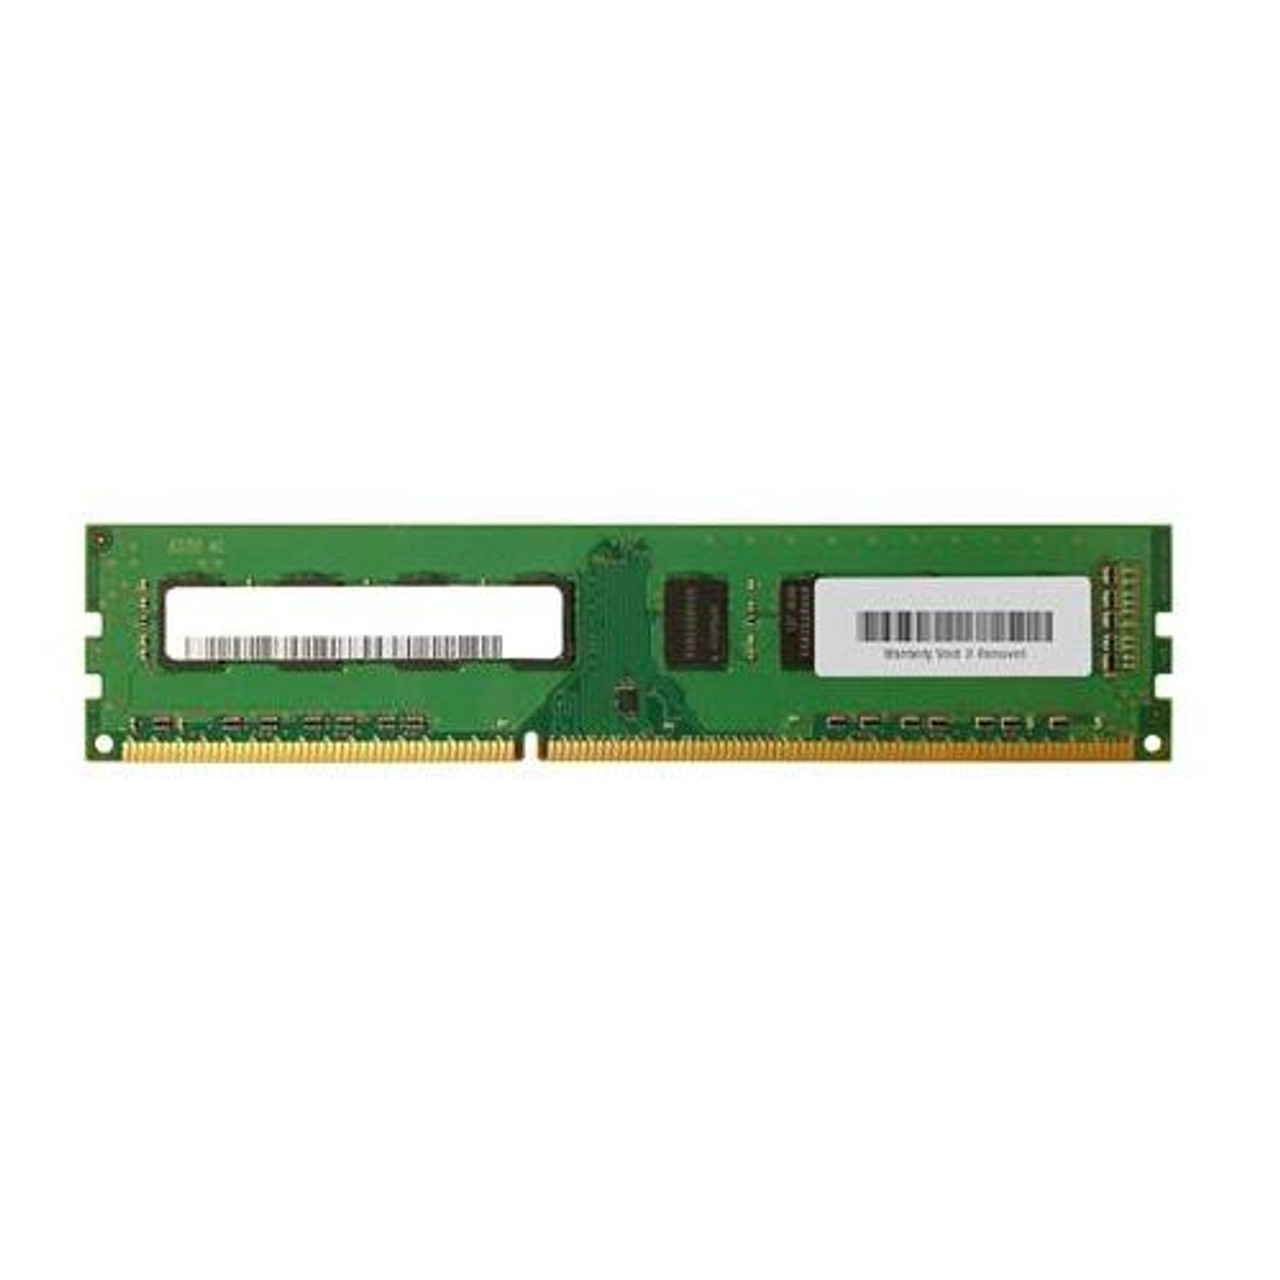 DDR4 Non ECC PC4-19200 2400Mhz Memory